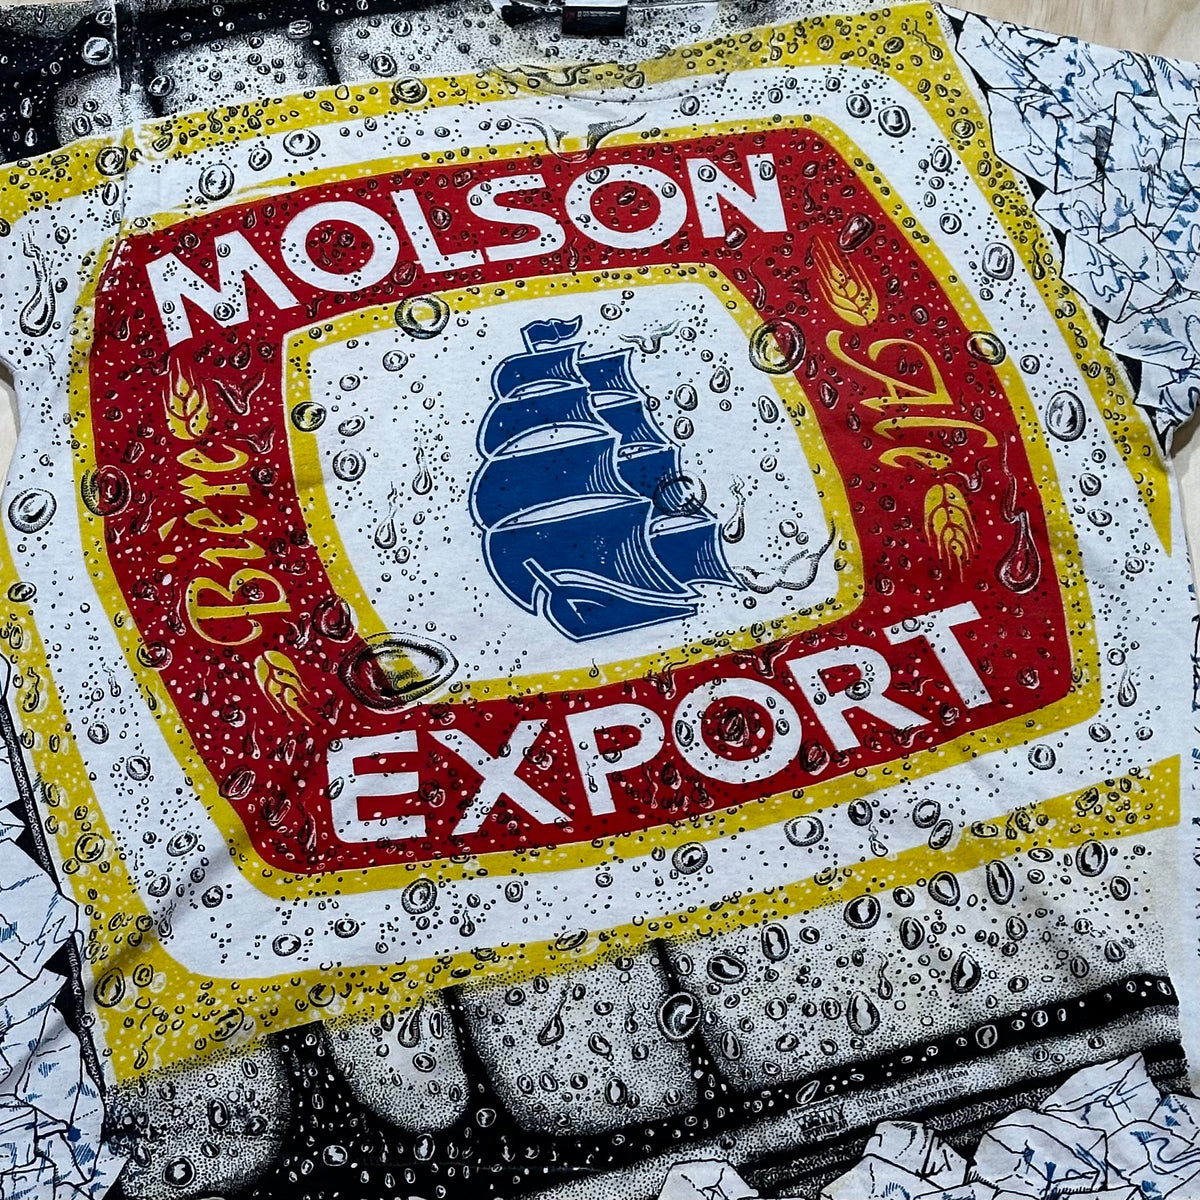 Vintage 90s Molson Export Bière Ale All over print